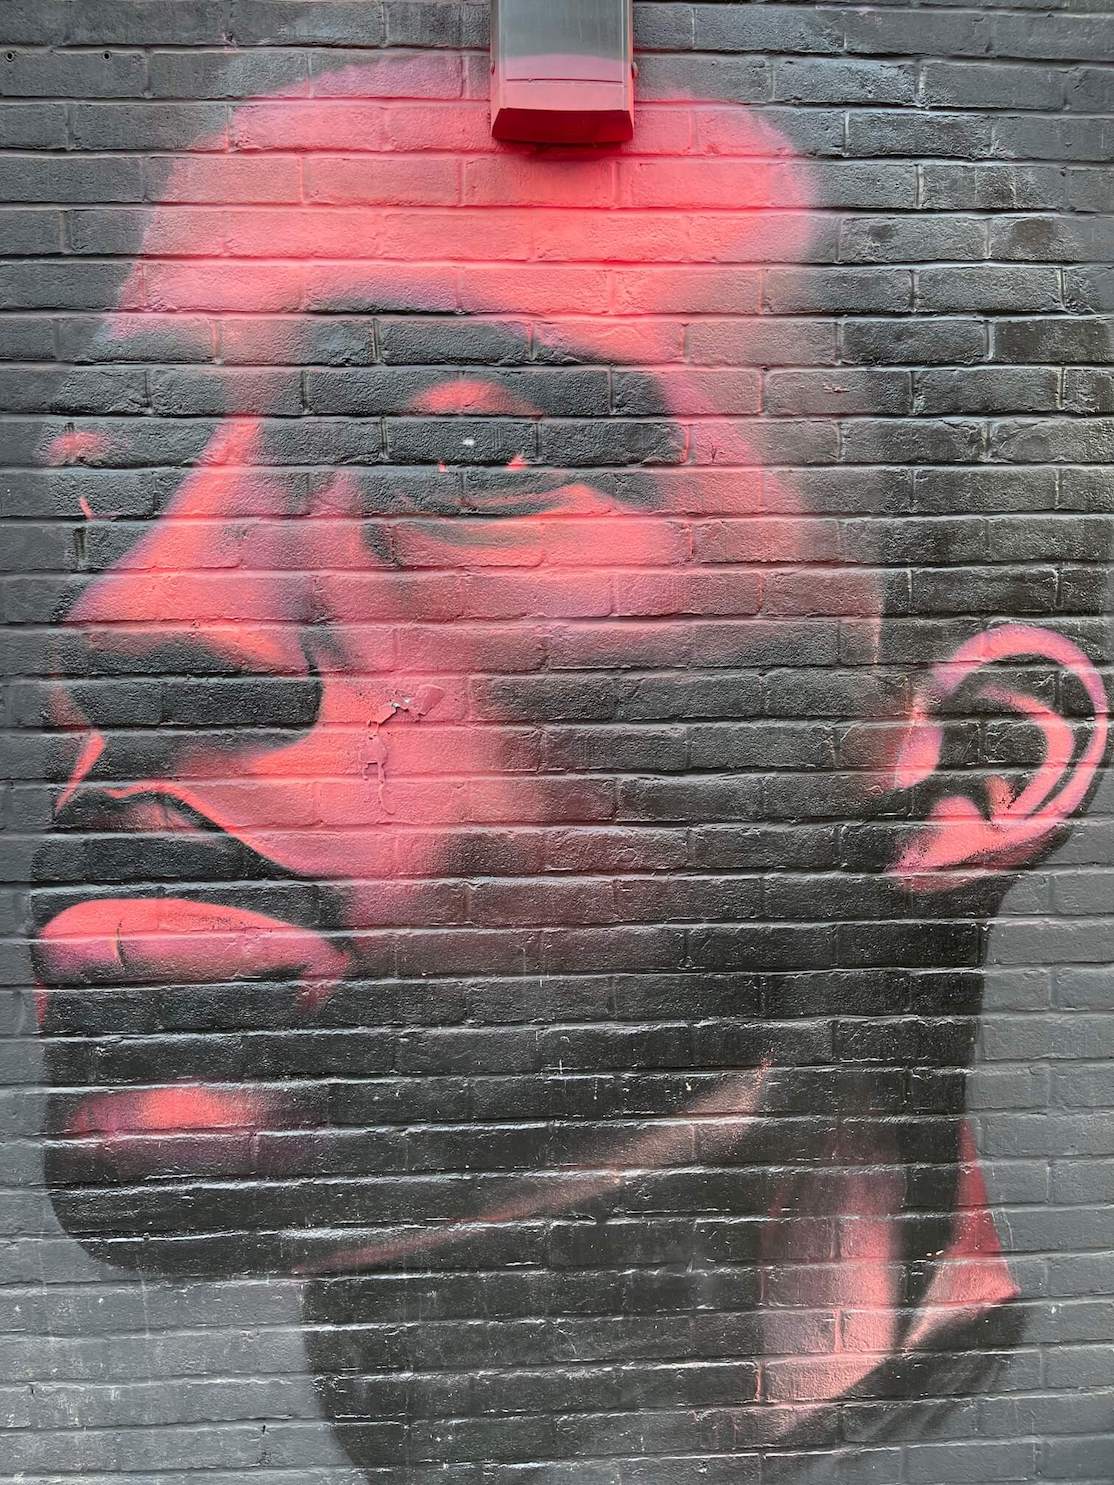 Un mural de retrato de cara rosa neón de un hombre por David Speed en Redchurch St, Londres